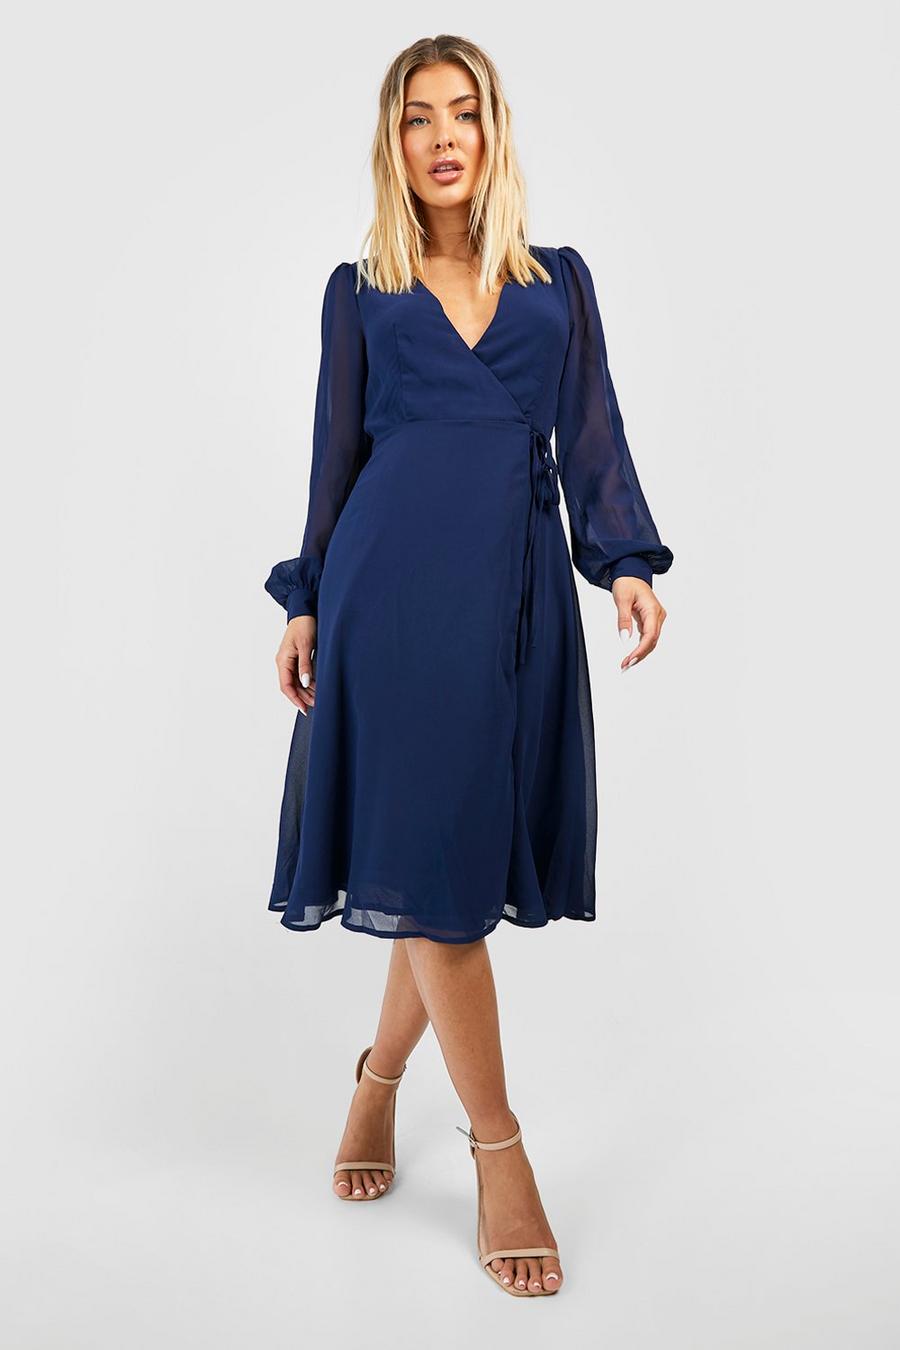 Chiffon Wrap Long Sleeve Midi Dress, Navy azul marino